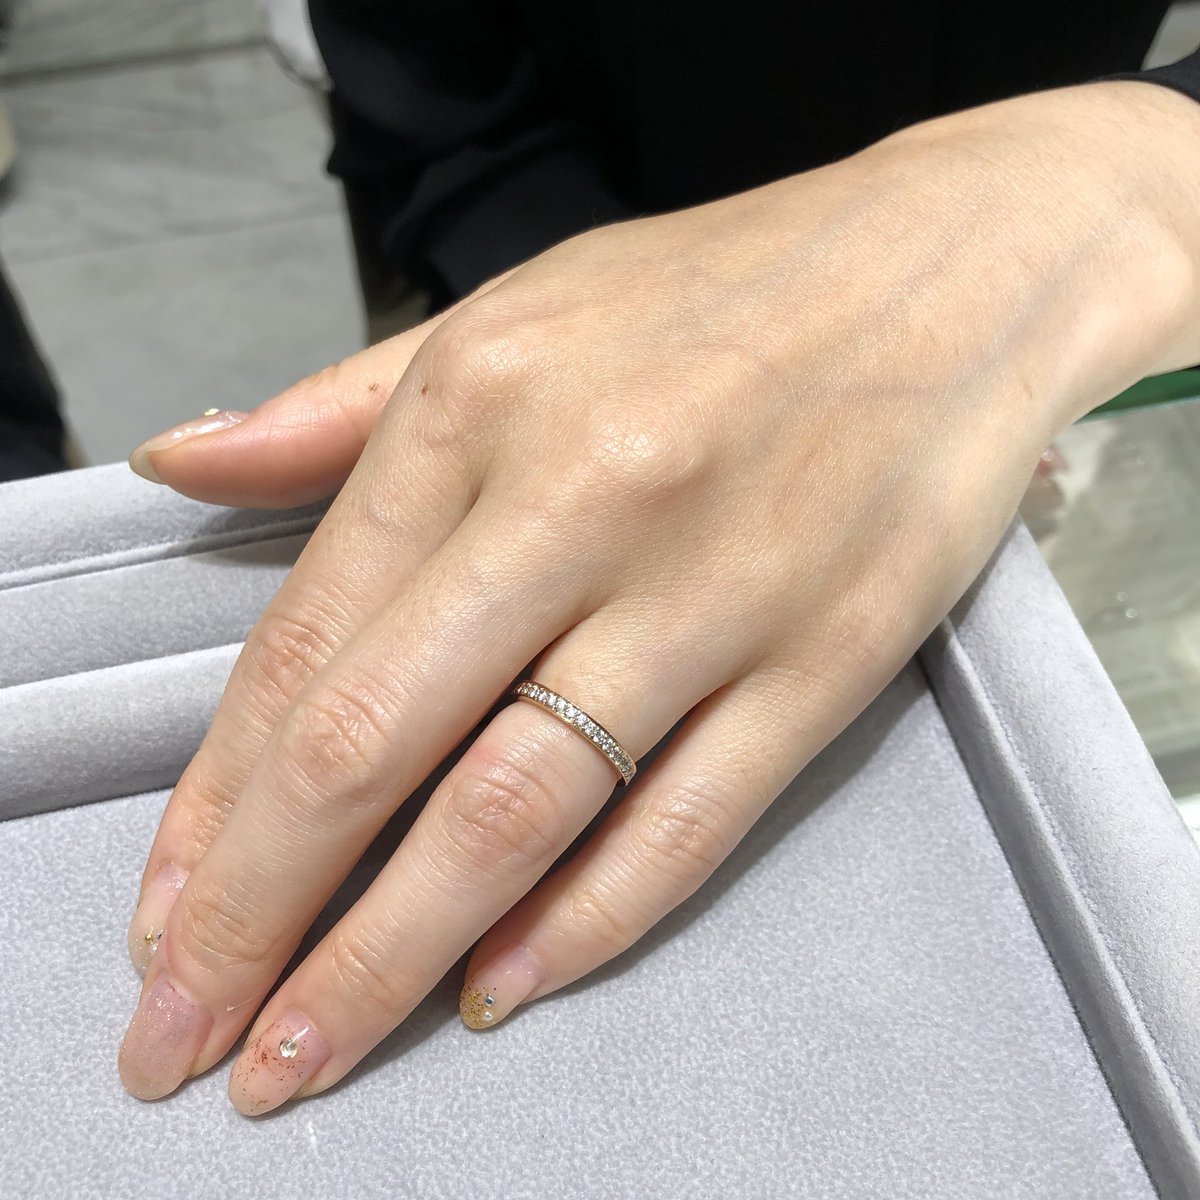 レハイム京都店 ゴールドのエタニティリングを結婚指輪としてお選びいただきました ダイヤモンド 婚約指輪 結婚指輪 マリッジリング 重ねづけ エタニティリング 指輪 リング ゼクシィ 京都 大阪 レハイム